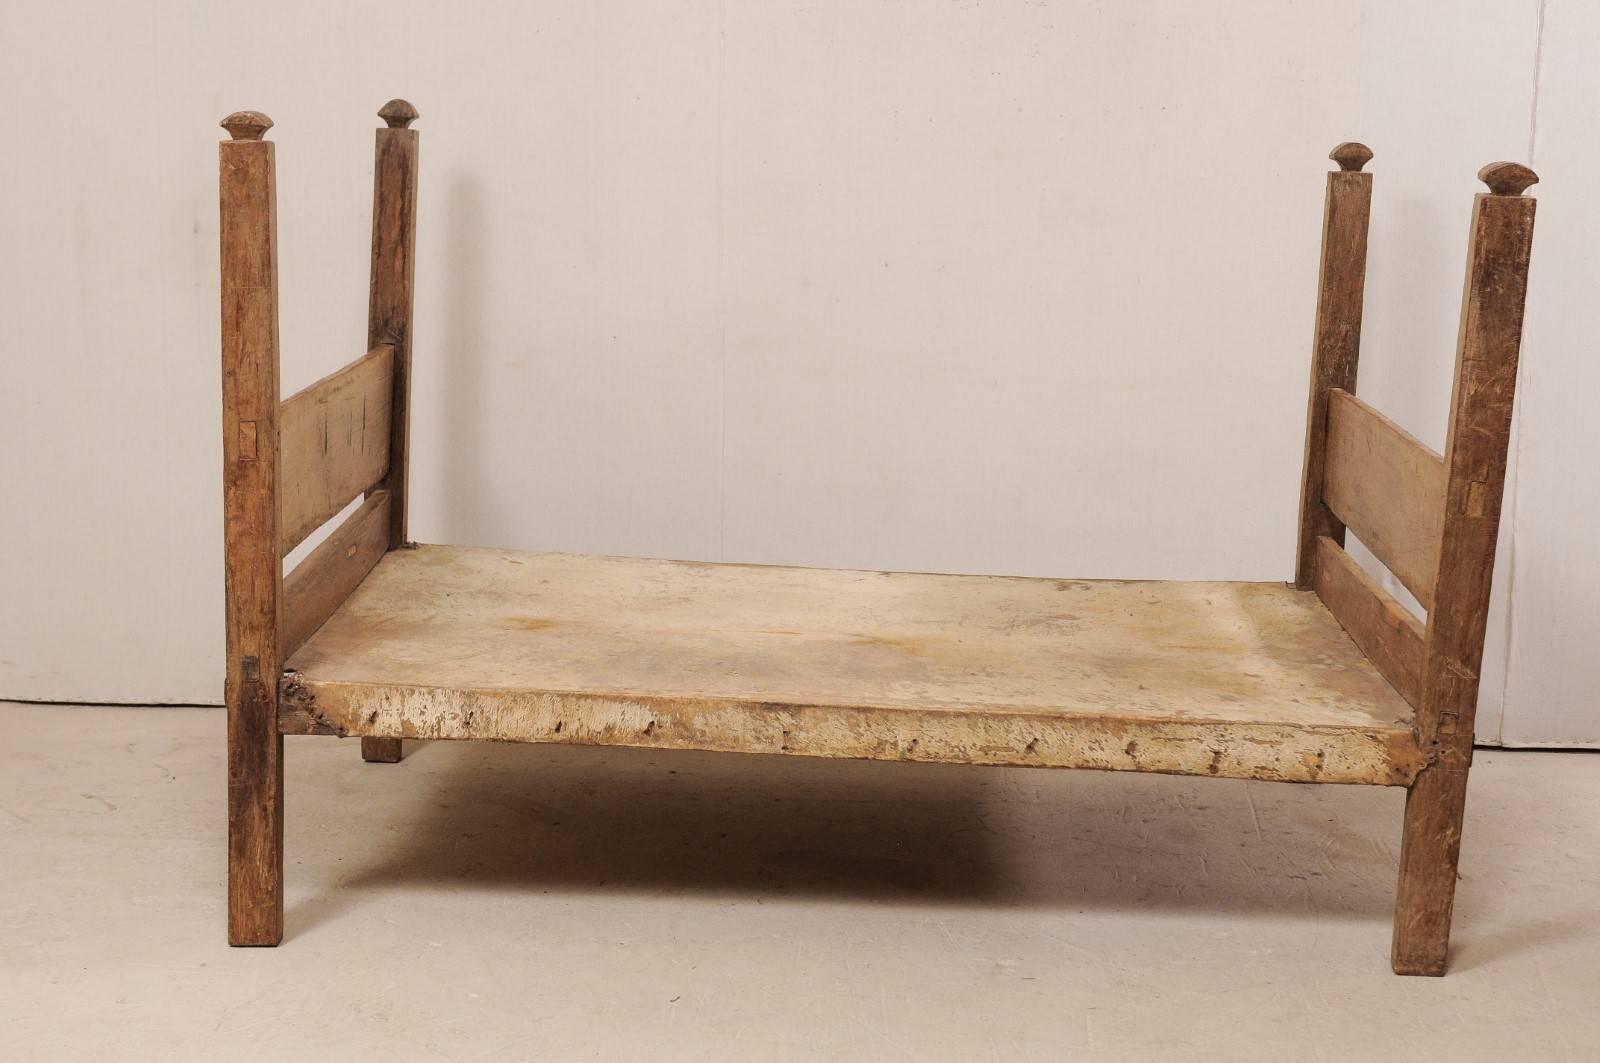 Eine alte brasilianische Kuhhaut und ein Holzrahmen für eine Liege. Dieses brasilianische Bett, das zwischen einem Zweibett- und einem Doppelbett liegt, zeichnet sich durch schlichte hölzerne Fuß- und Kopfteile, vier quadratische Beine, die nach